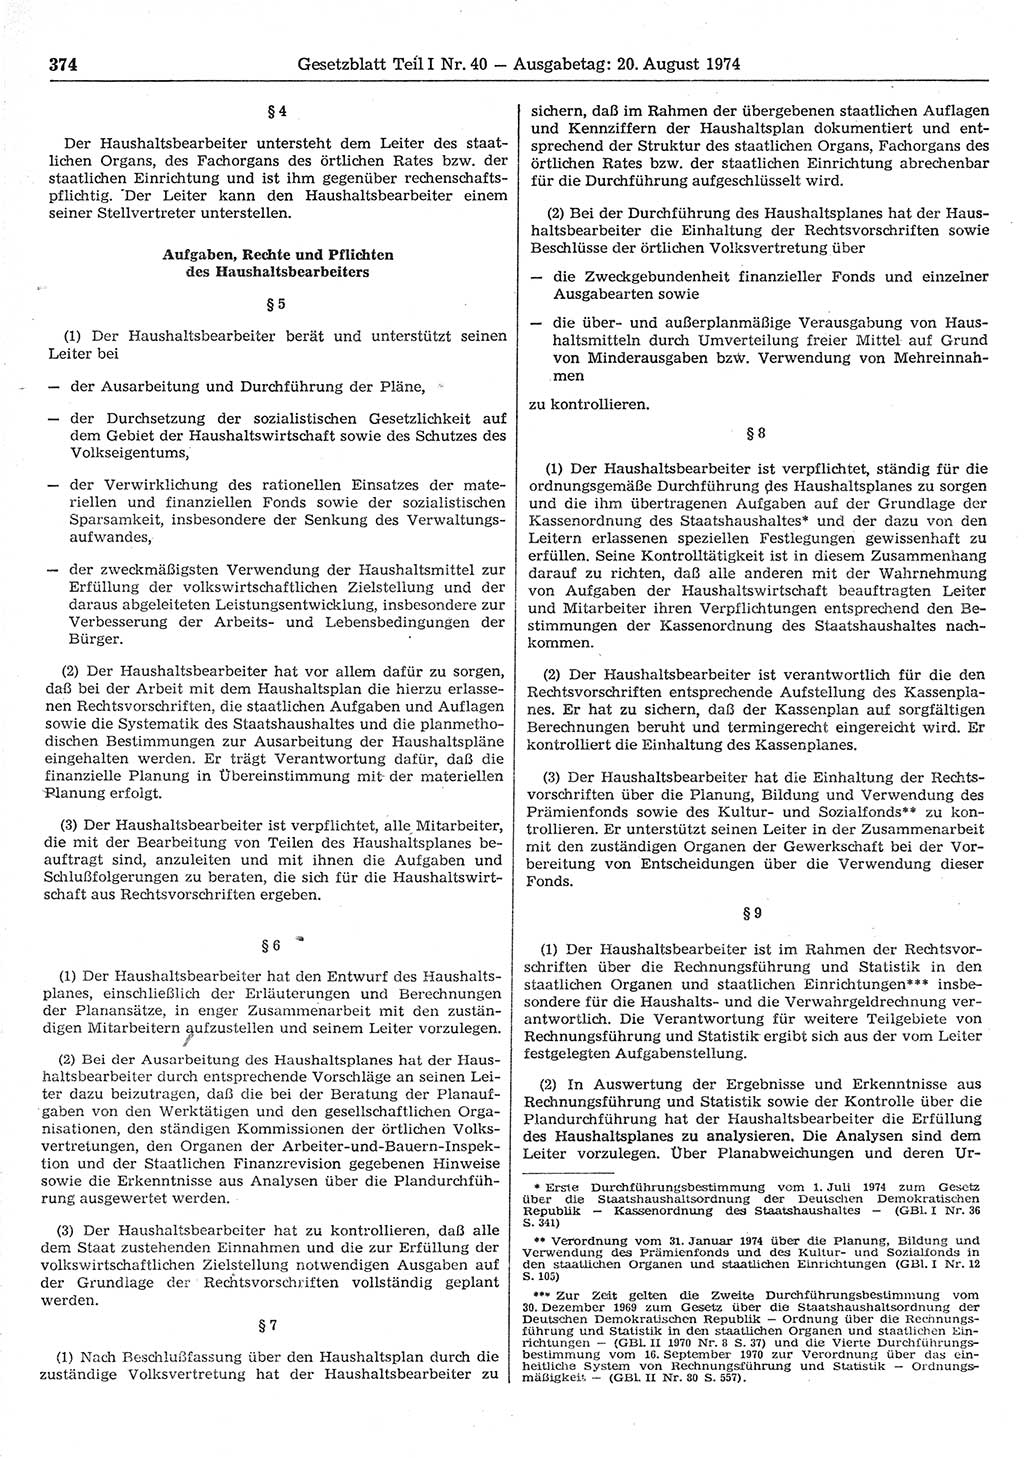 Gesetzblatt (GBl.) der Deutschen Demokratischen Republik (DDR) Teil Ⅰ 1974, Seite 374 (GBl. DDR Ⅰ 1974, S. 374)